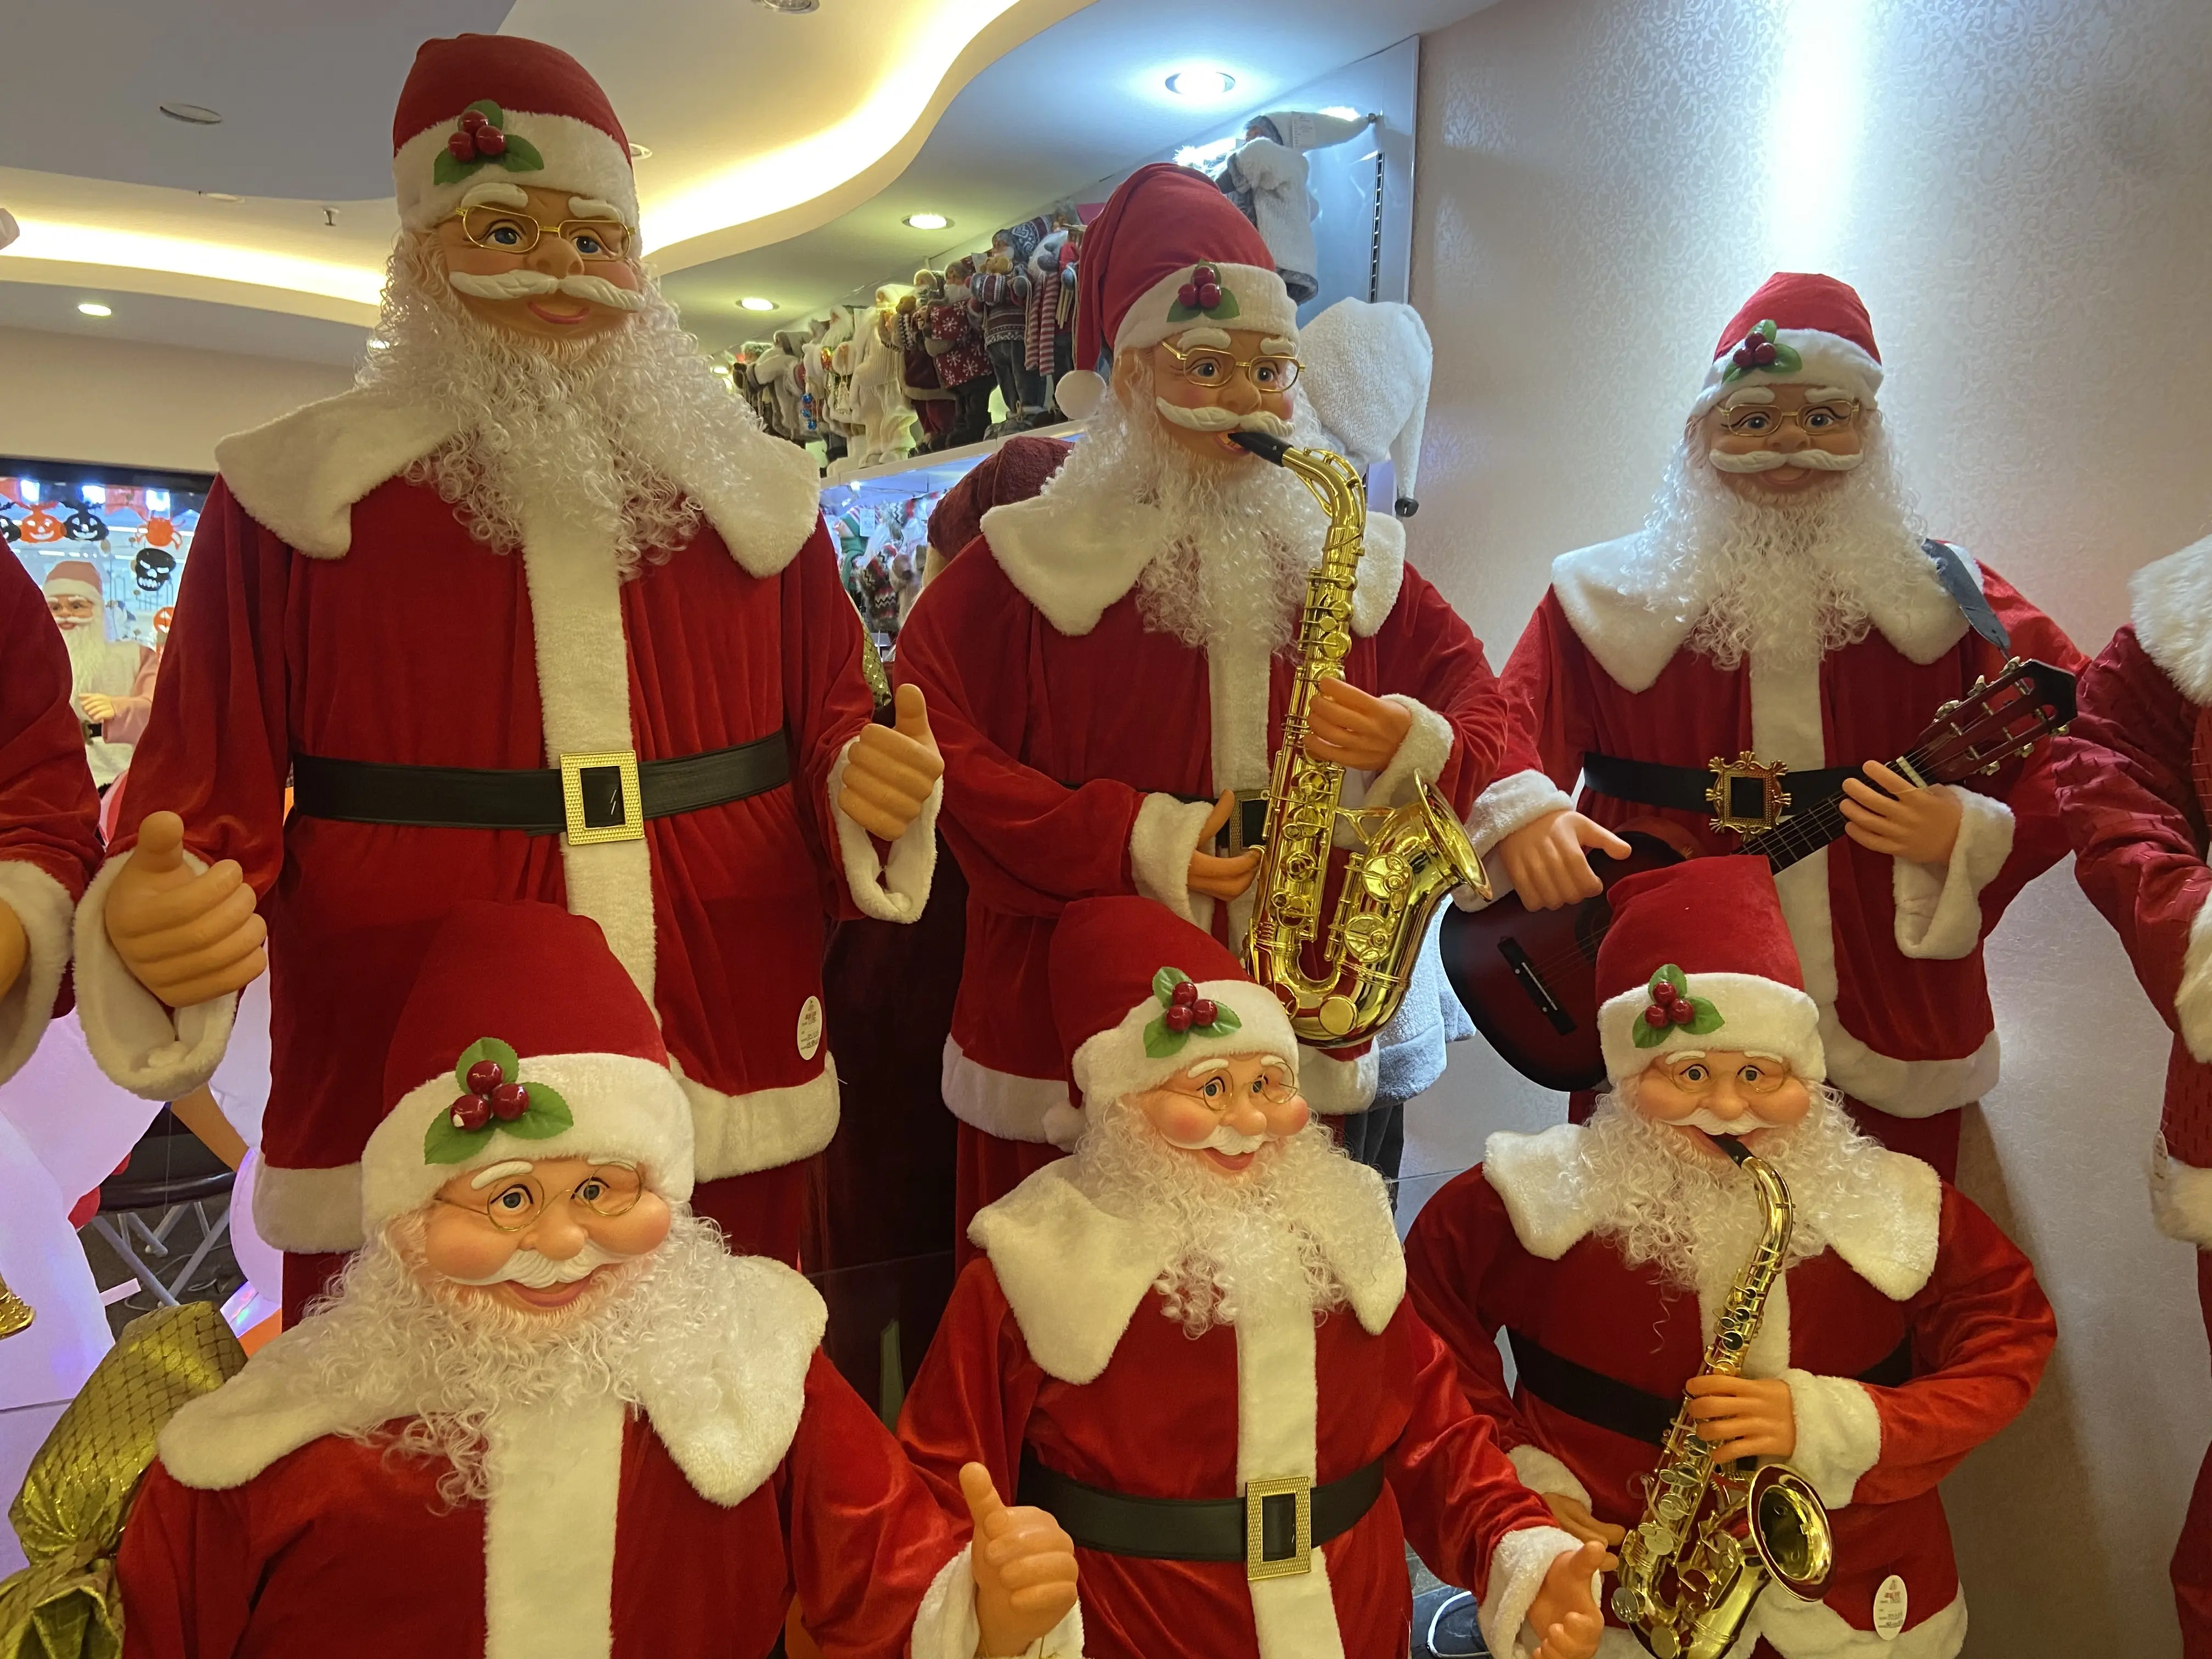 Lebensgröße Außenbereich 6 Fuß tanzender Weihnachtsmann Stoff Weihnachtsschmuck Bluetooth Singen Weihnachtsmann und Dekoration Feiertagsgeschenk